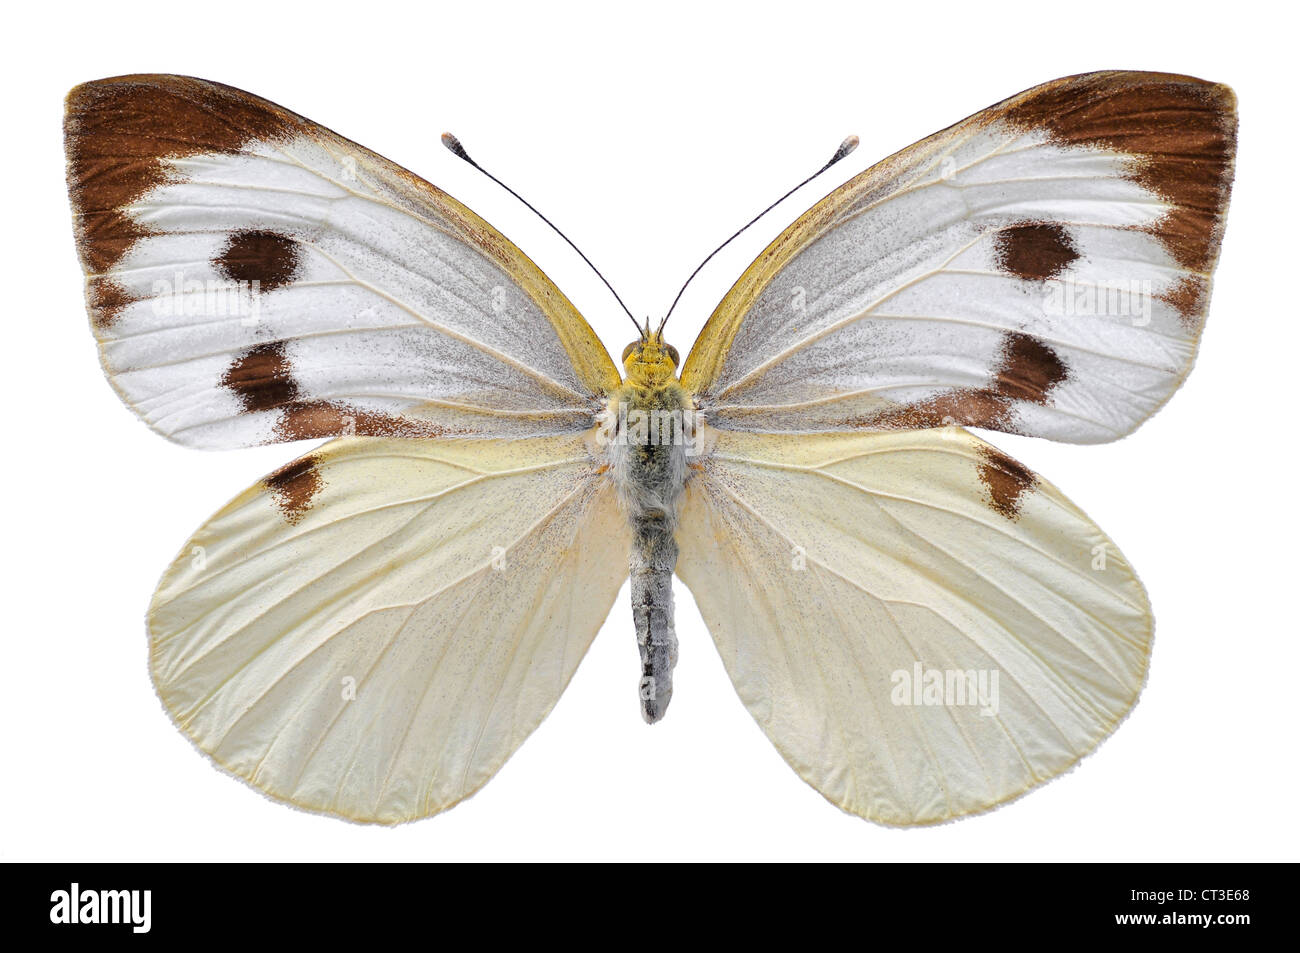 Grand papillon blanc, également appelé papillon du chou ou chou blanc (Pieris brassicae), isolé sur fond blanc Banque D'Images